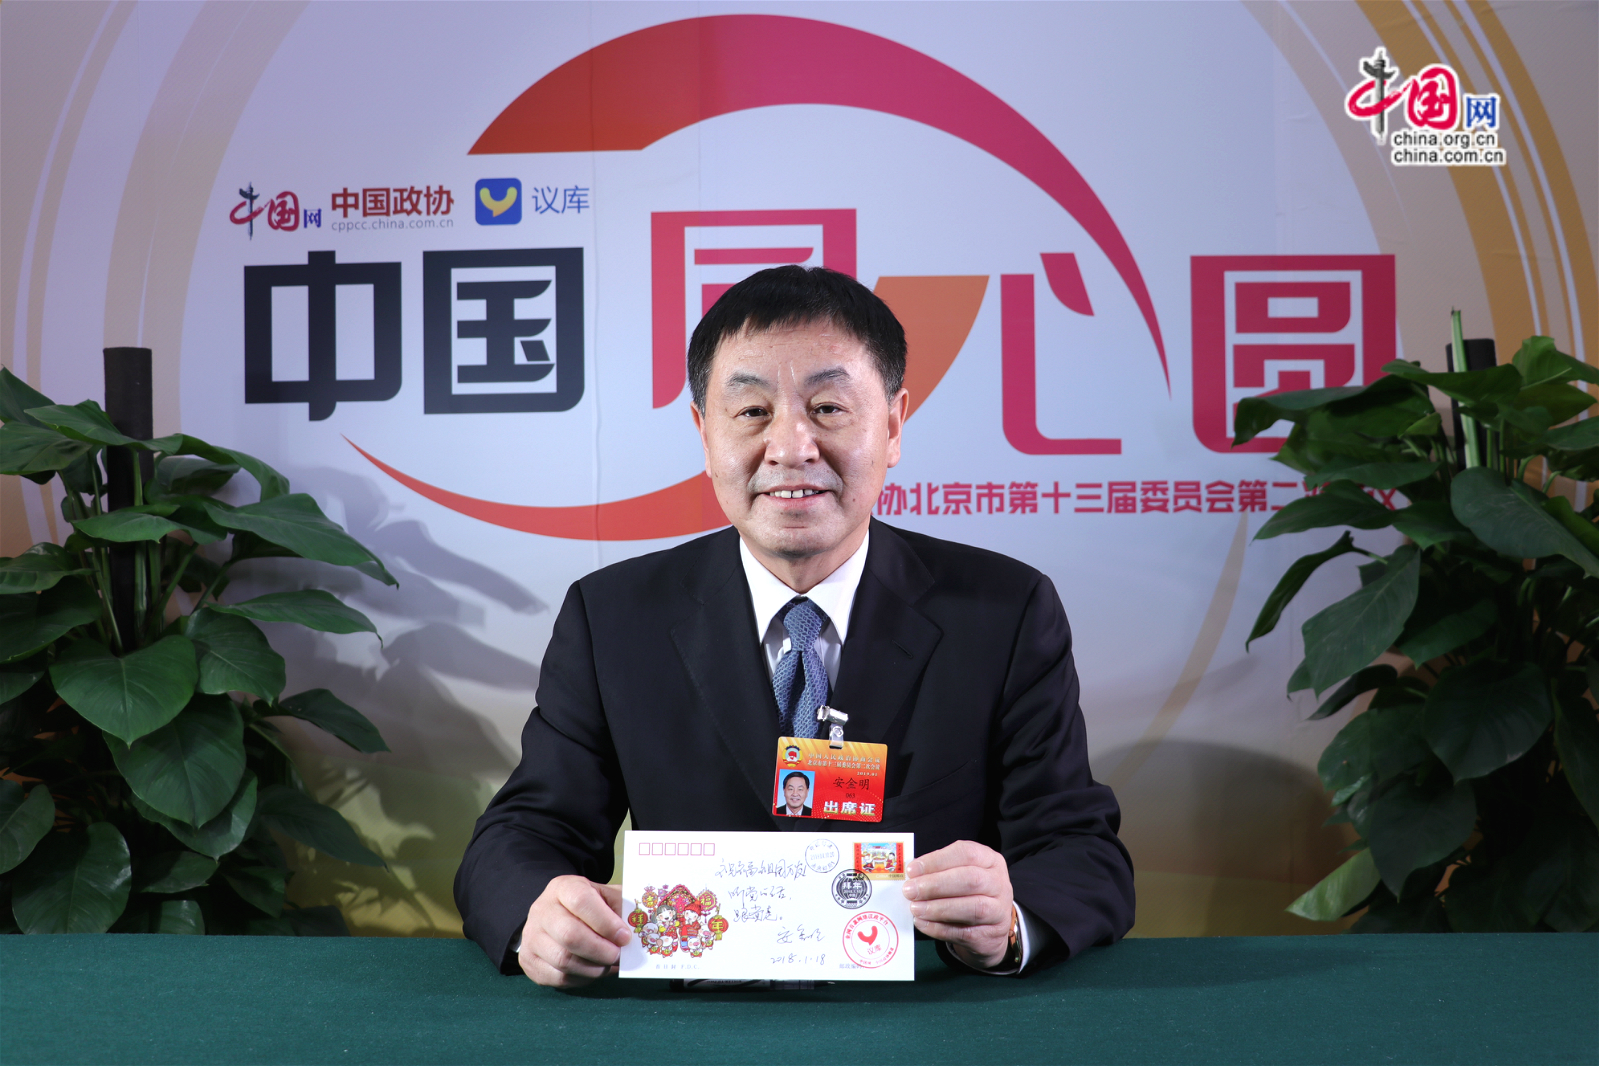 北京市政协委员安金明展示刚写好的祝福信。中国网记者胡俊摄